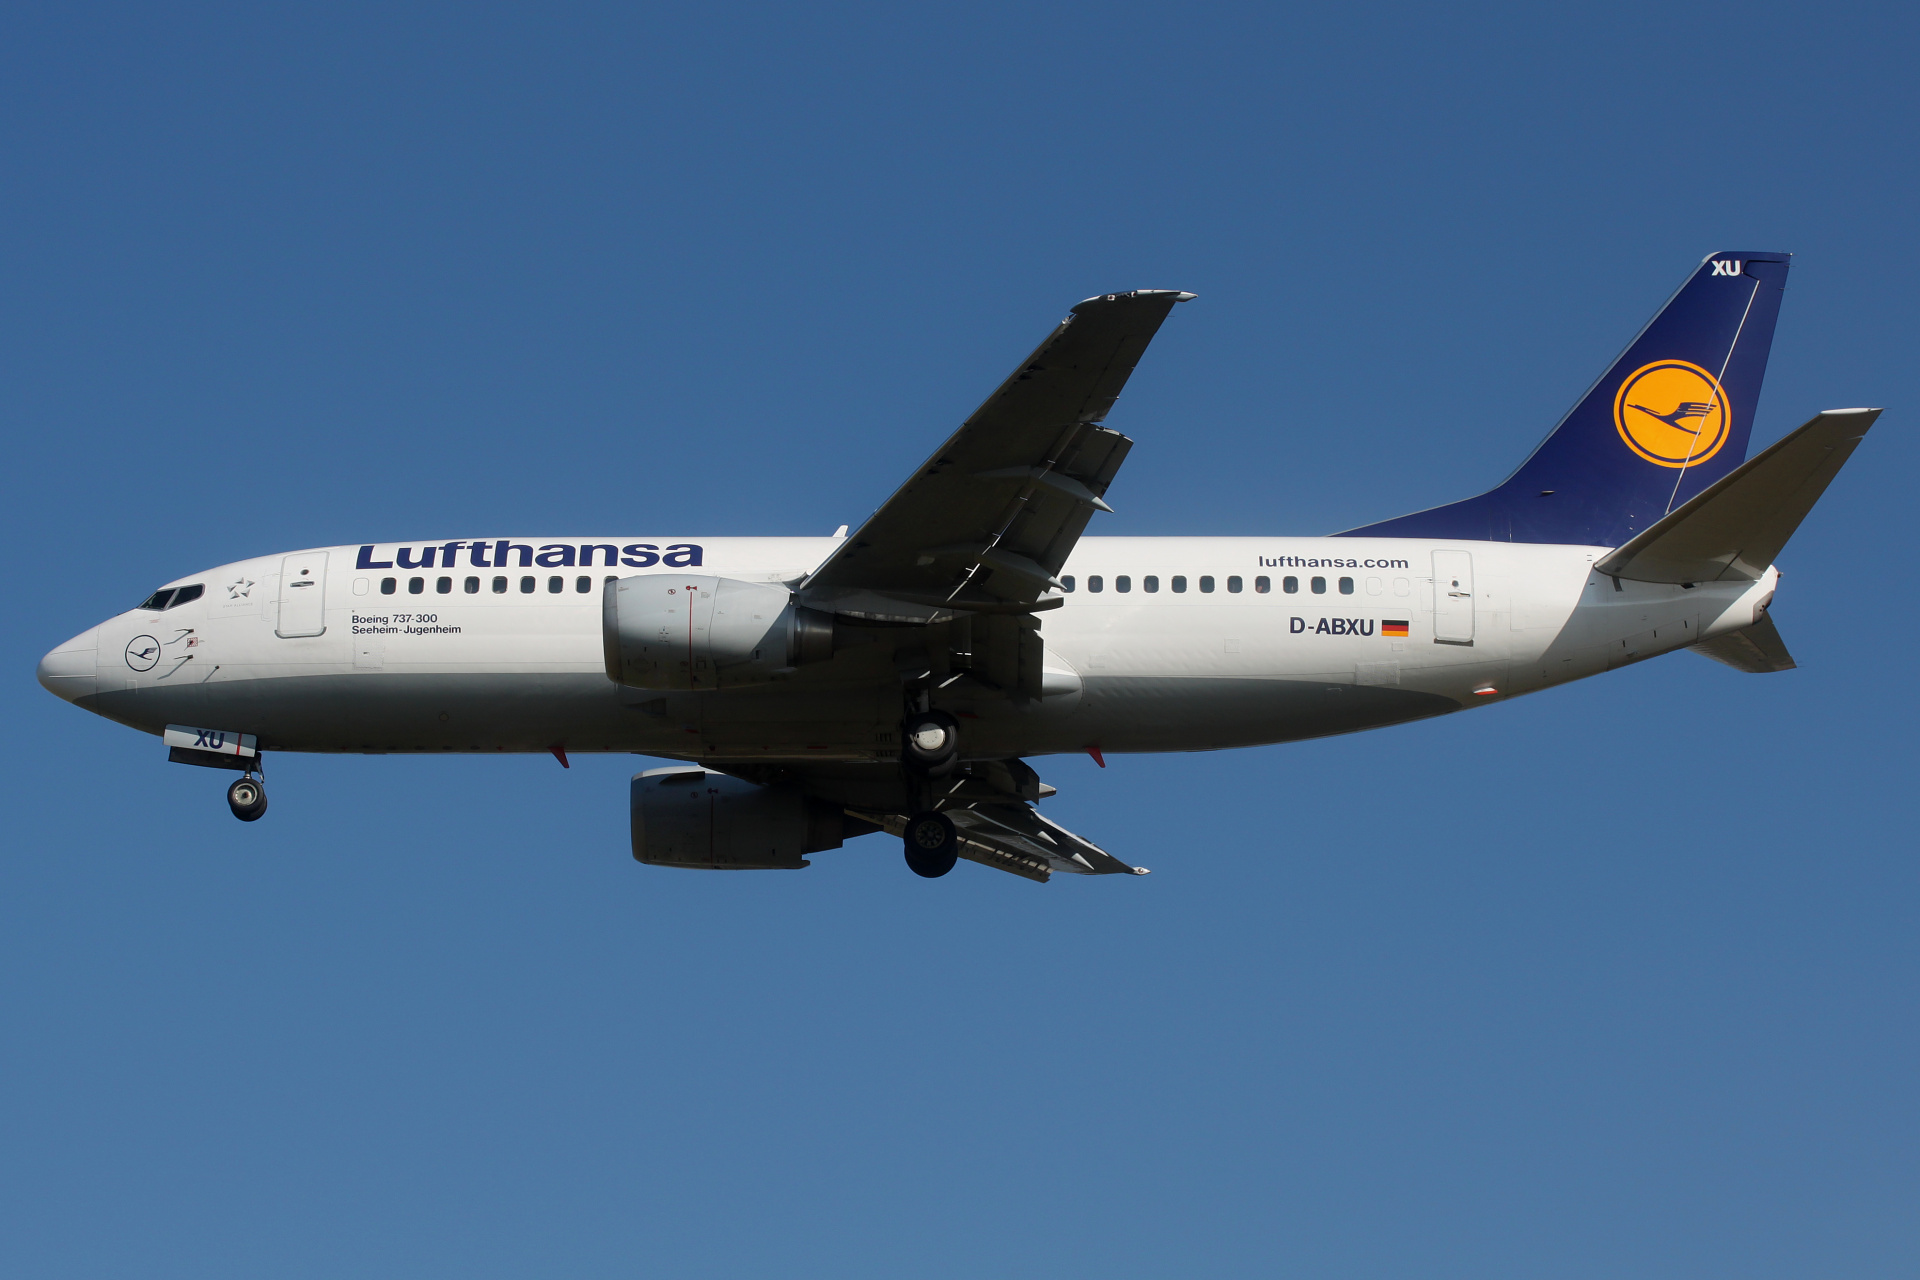 D-ABXU (Aircraft » EPWA Spotting » Boeing 737-300 » Lufthansa)